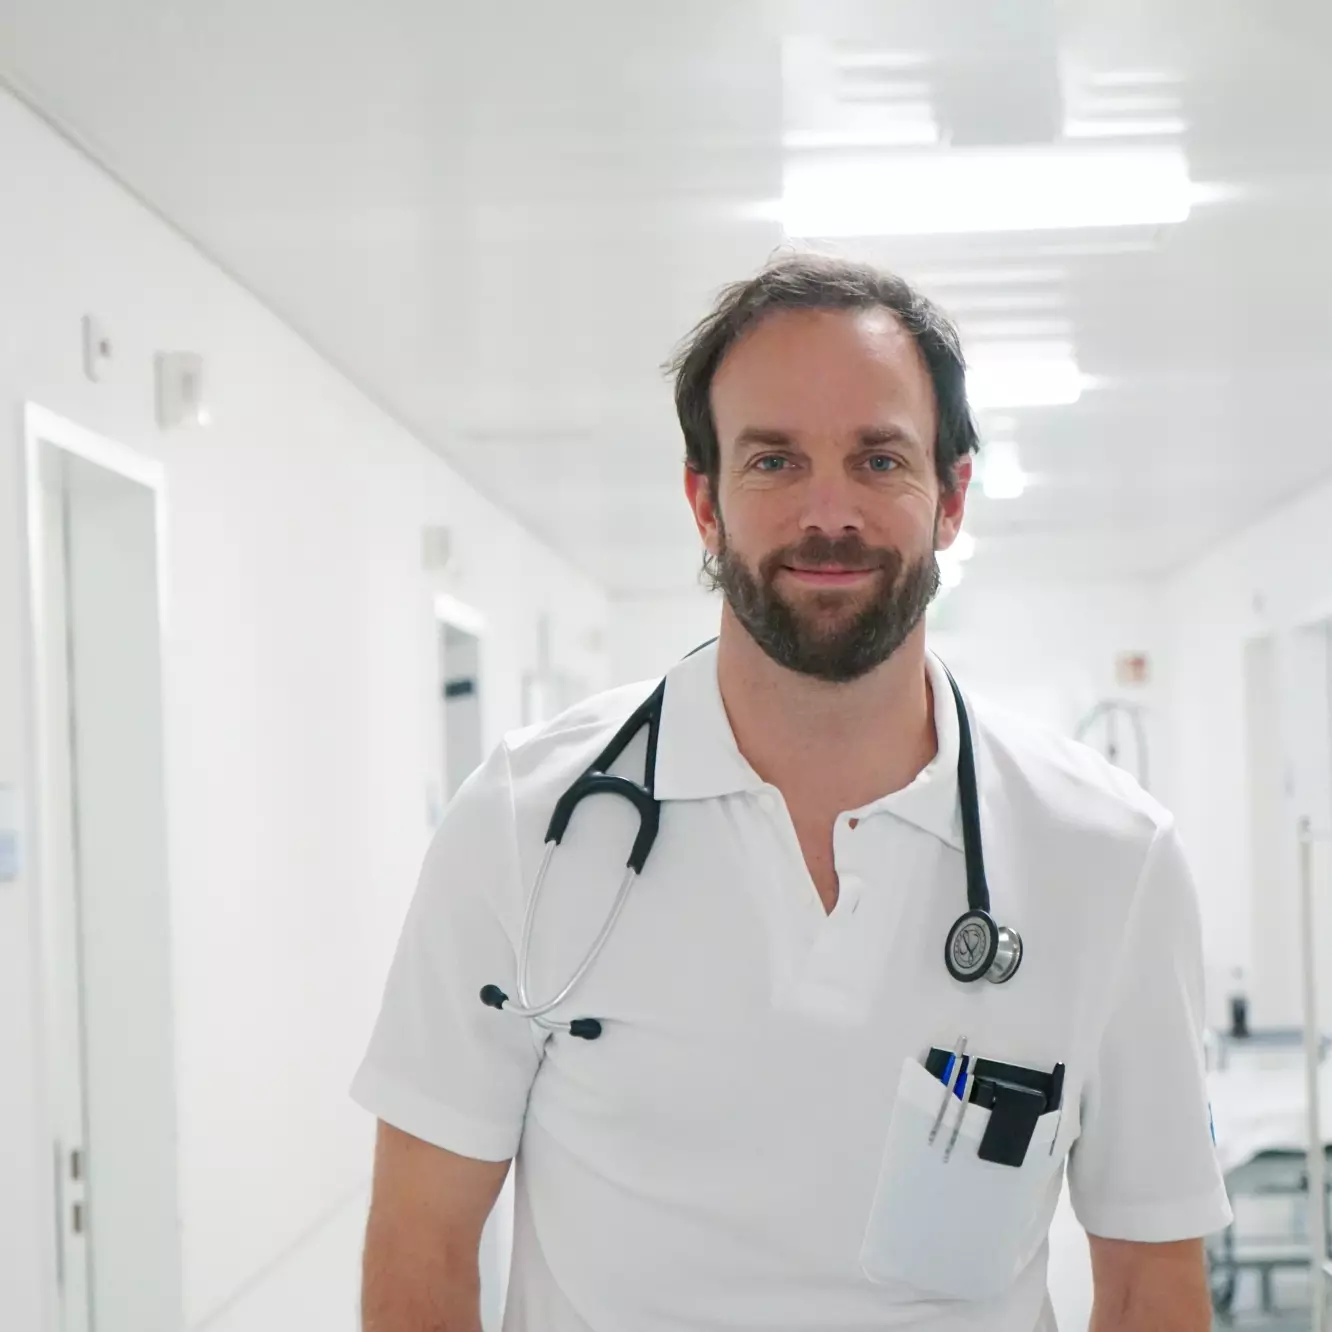 Pascal Köpfli, Stellvertretender Leiter nicht-invasive Kardiologie, ist Teil der Ärzteschaft am KSB.